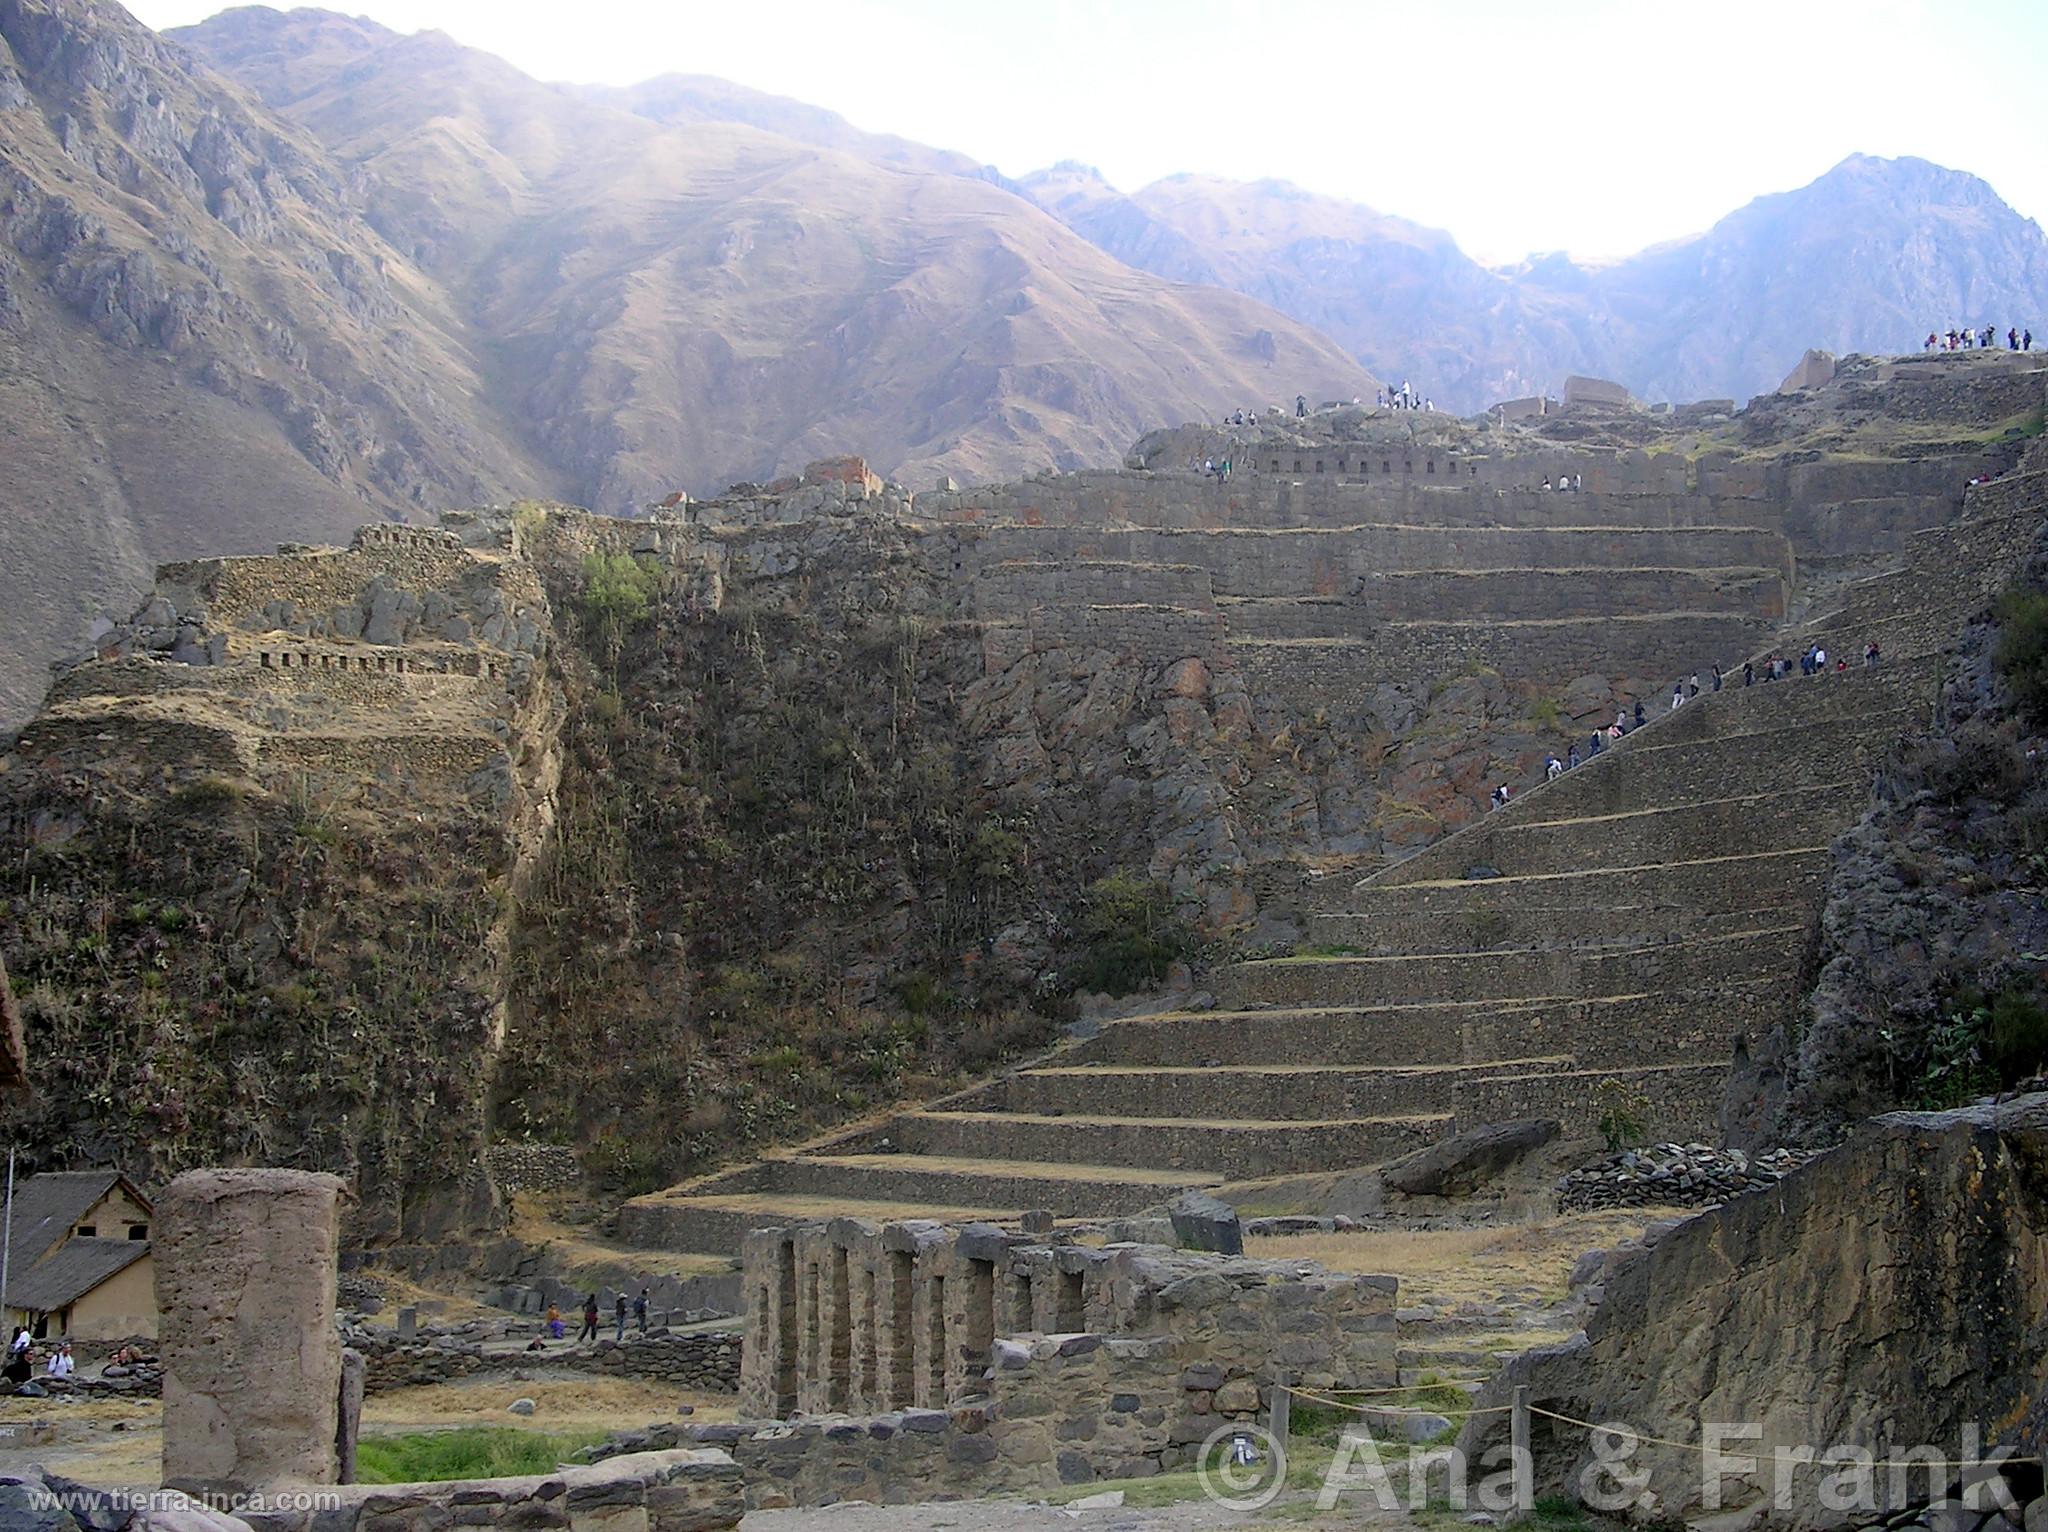 Fotos de Perú